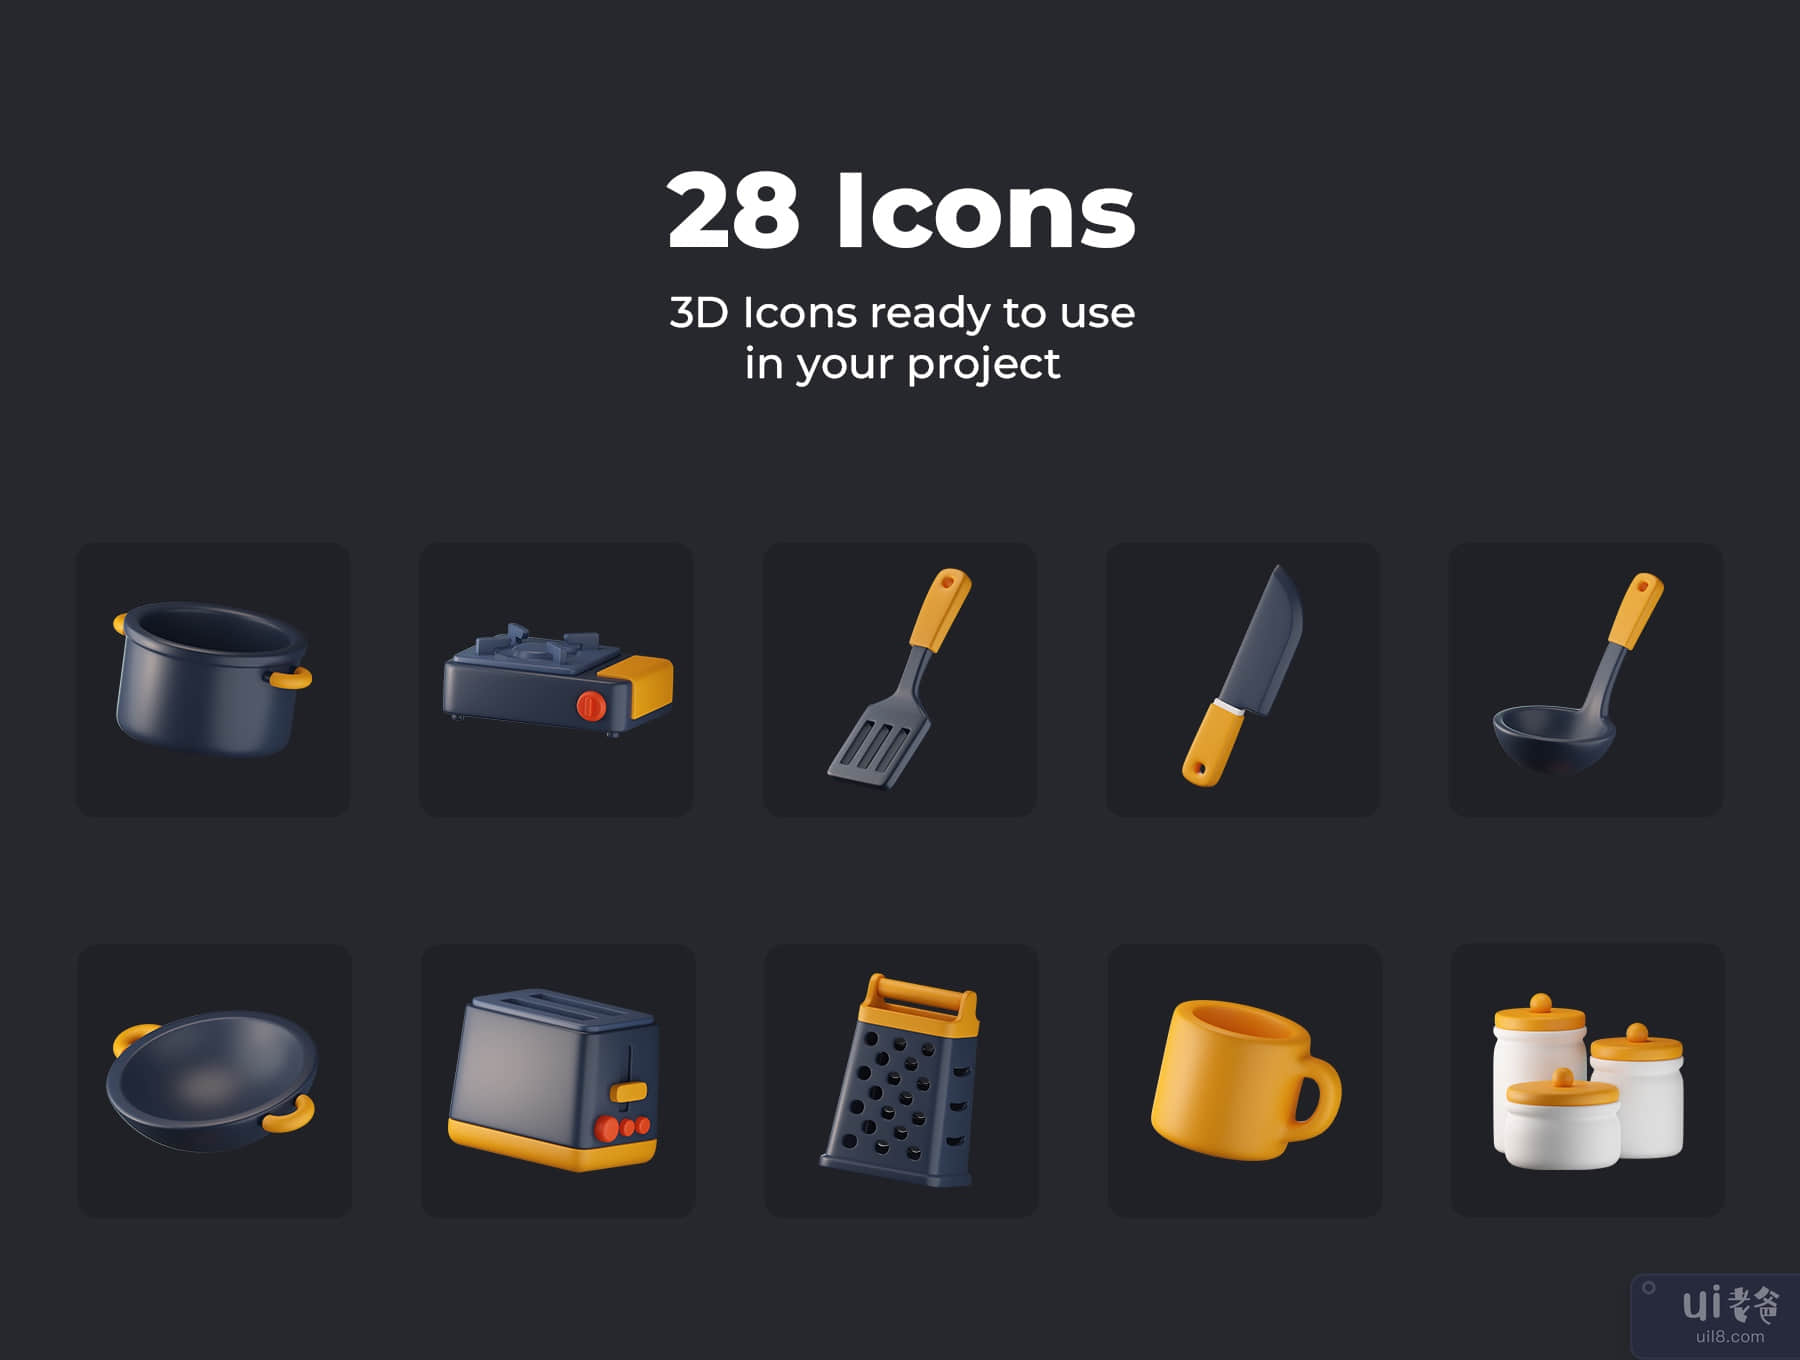 厨房工具 3D 图标 (Kitchen Tools 3D Icons)插图1